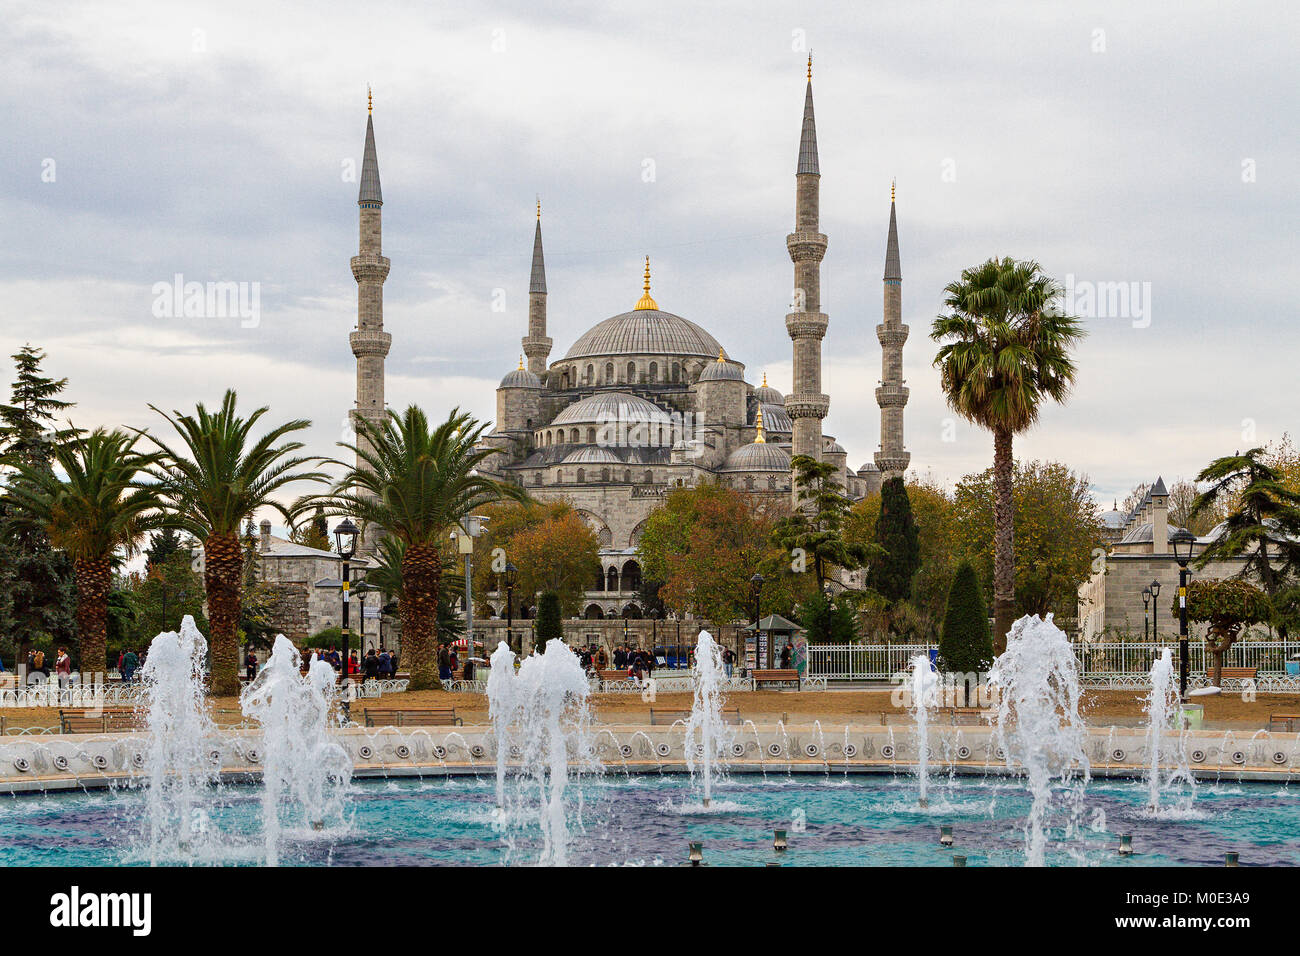 Blaue Moschee im Stadtteil Sultanahmet in Istanbul, Türkei. Stockfoto